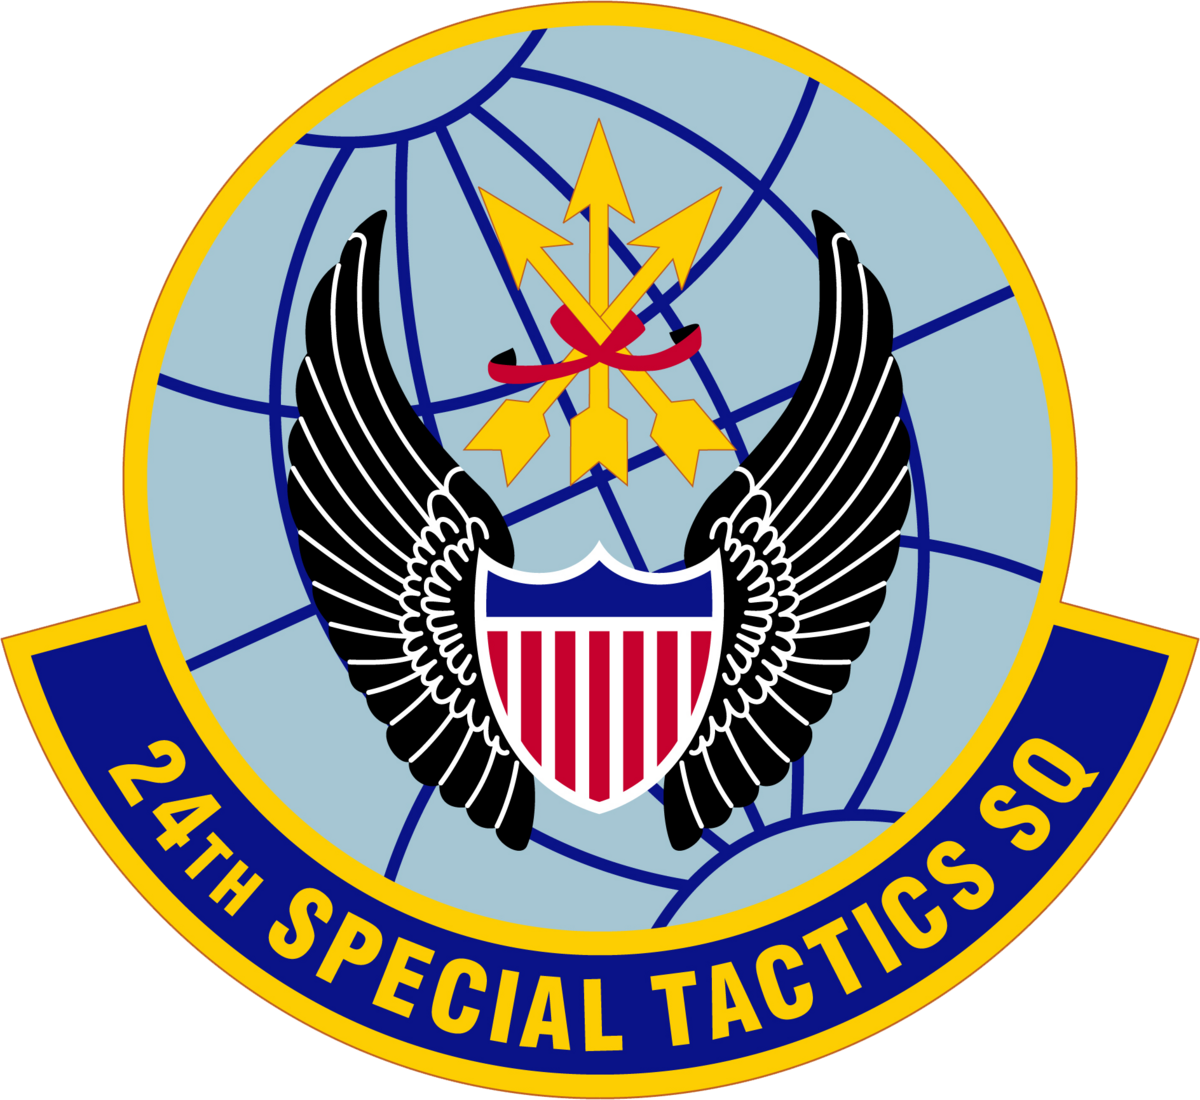 File:230202-F-AFHRA-196 24th Special Tactics Squadron.png